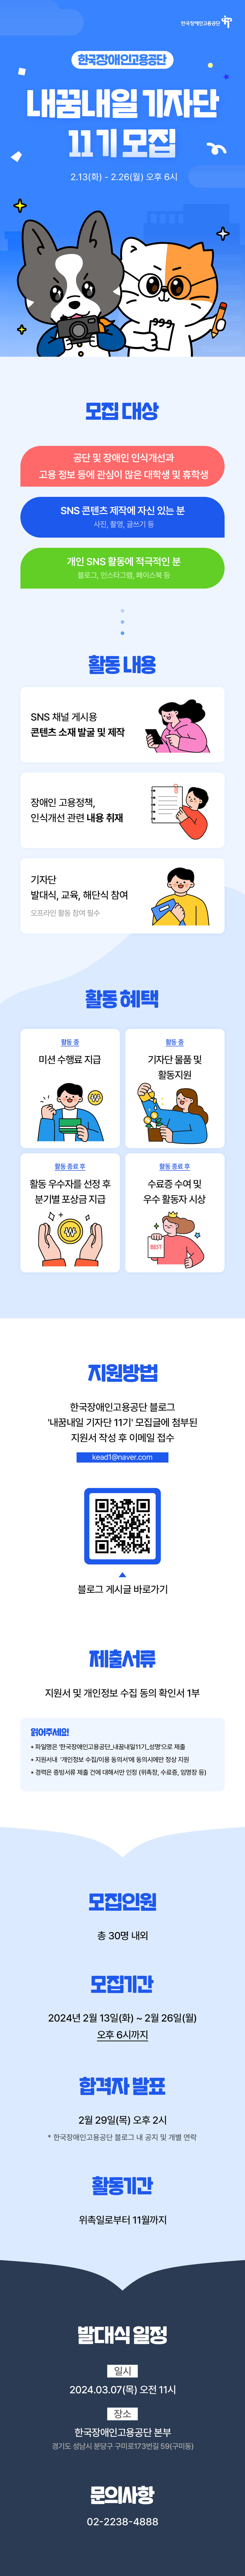 한국장애인고용공단 내꿈내일 기자단 11기 모집